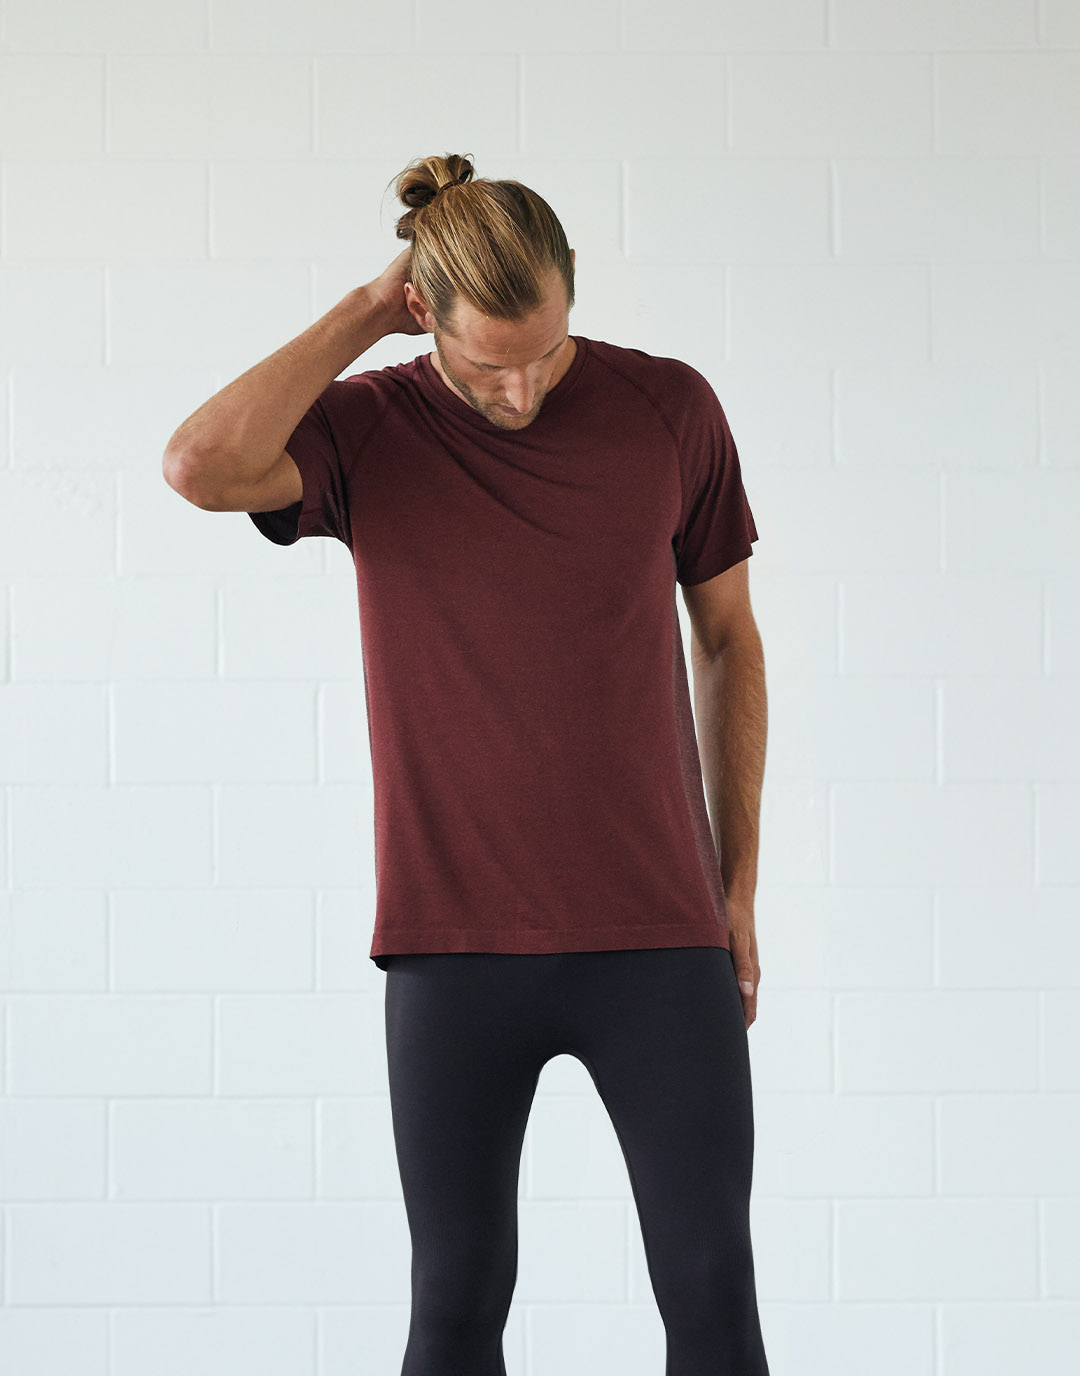 Mann in einem roten T-Shirt und schwarzen Leggings